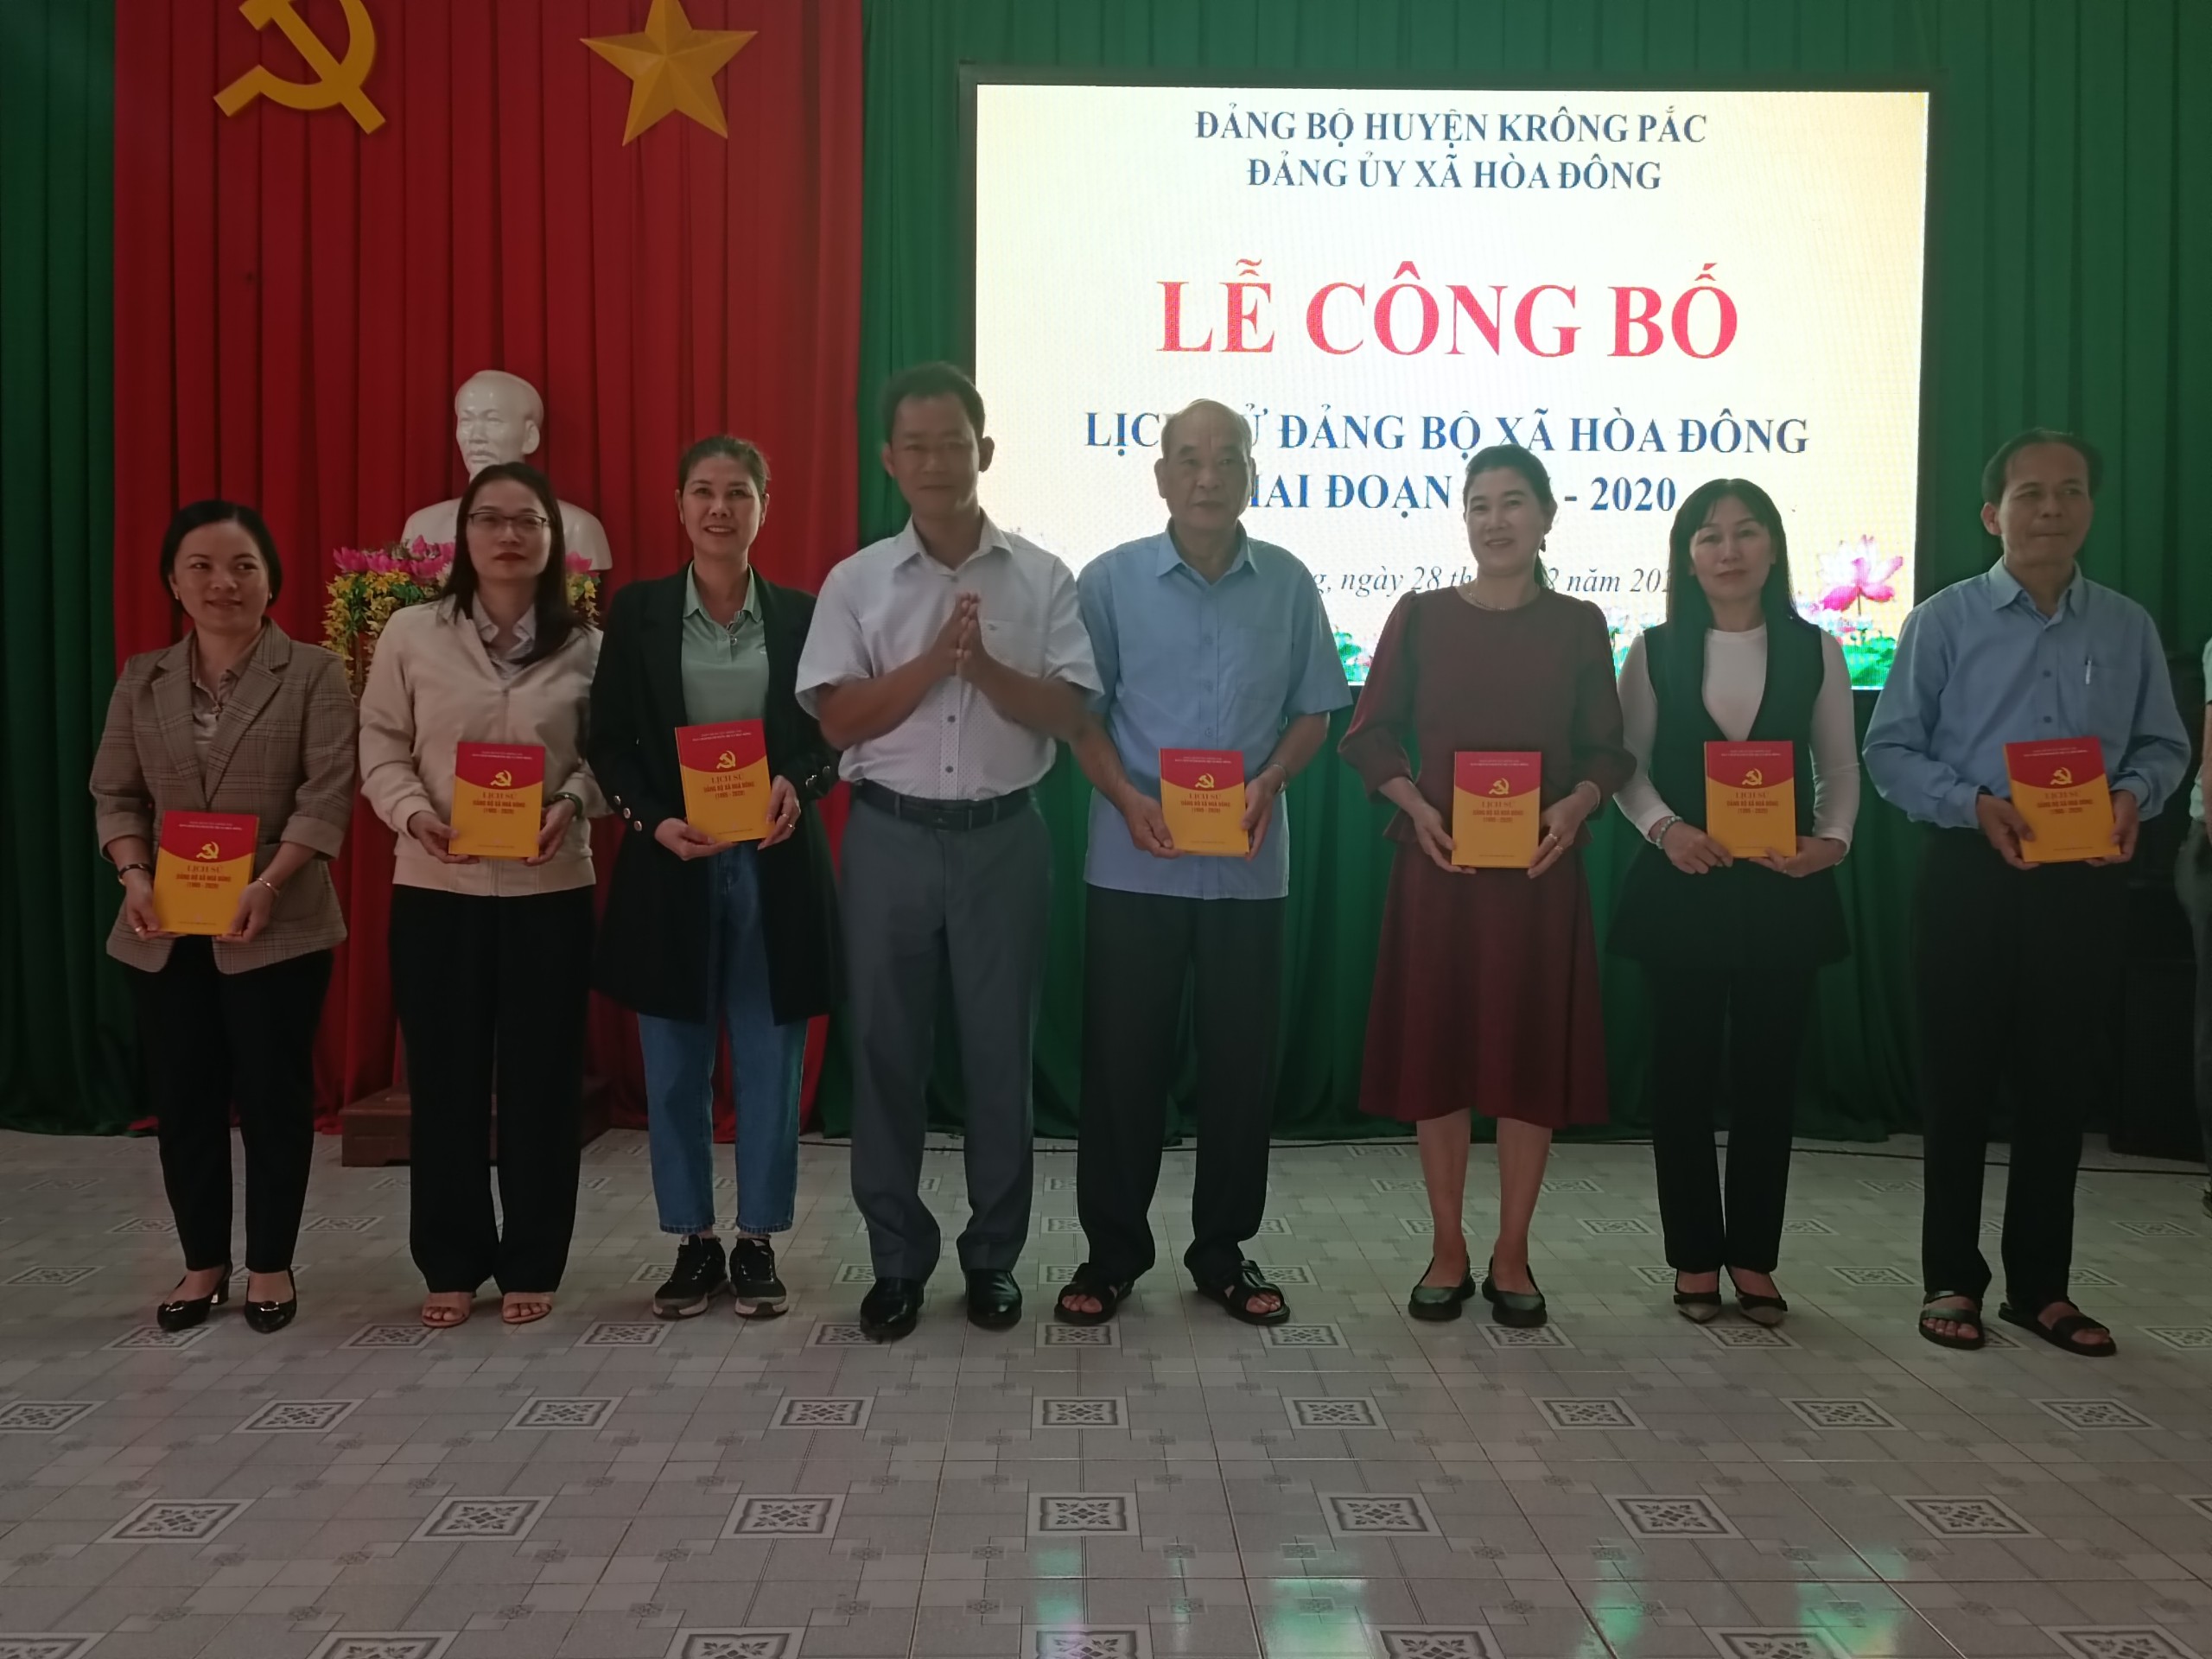 Lễ công bố lịch sử đảng bộ xã Hoà Đông (giai đoạn 1995- 2020)